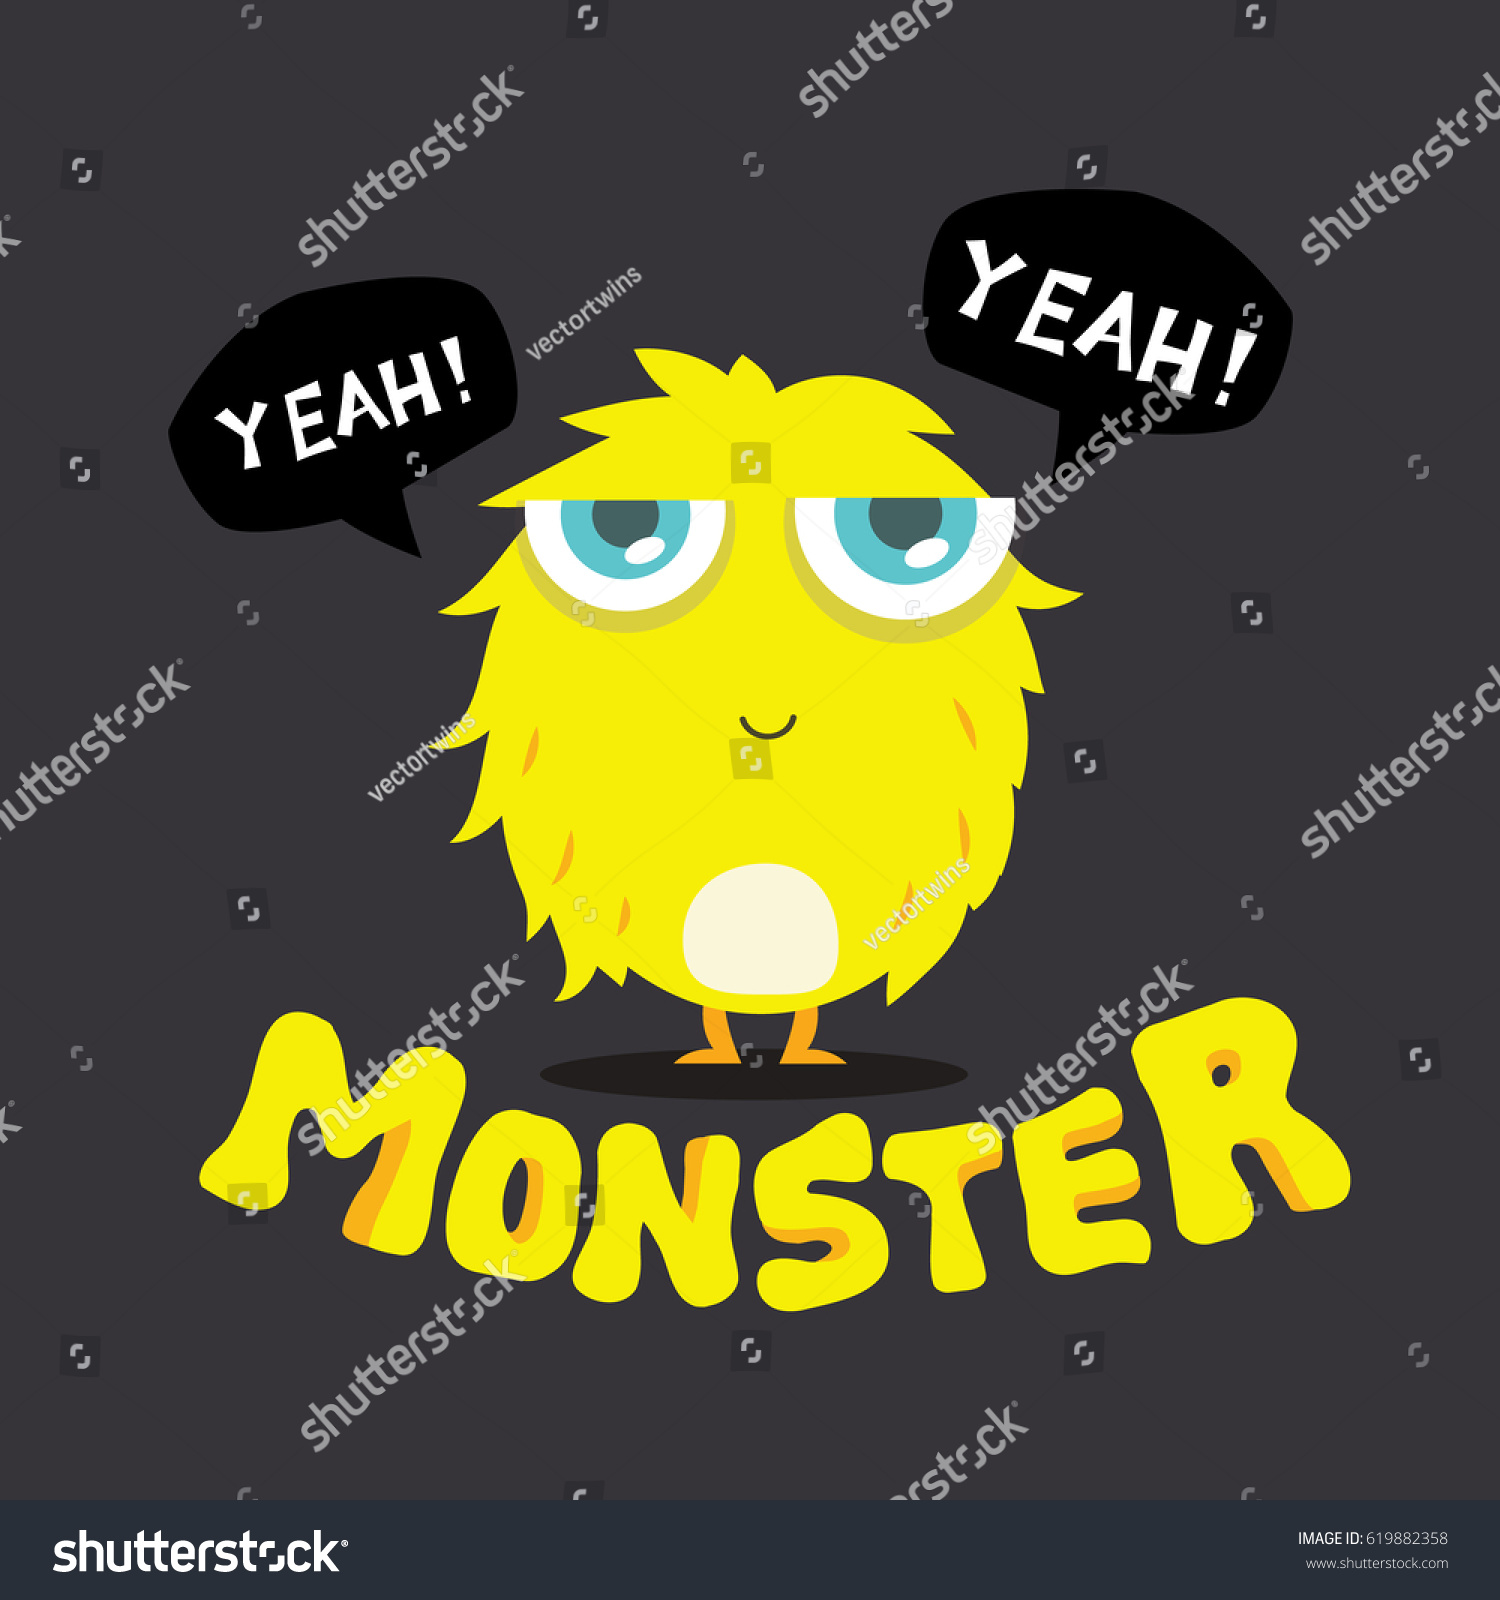 Cute Monster Kids Logo Template #619882358